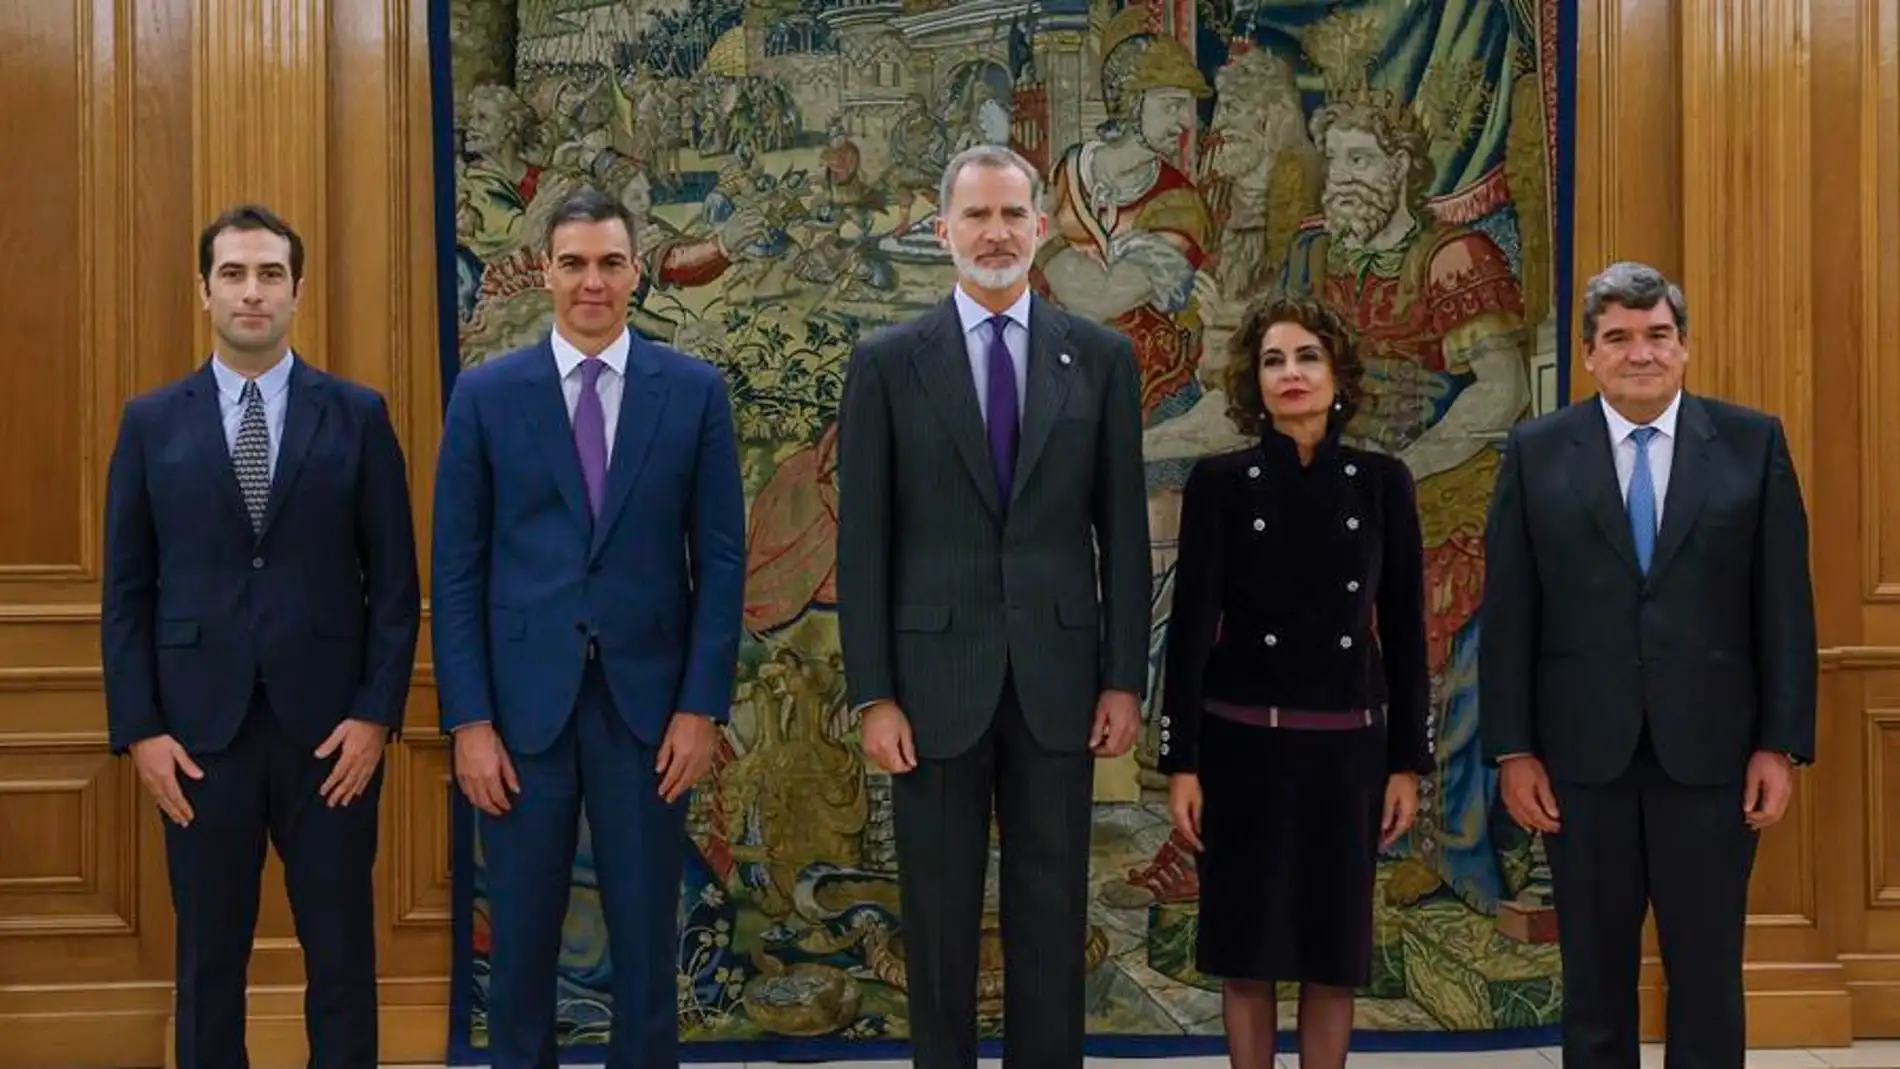 Carlos Cuerpo, María Jesús Montero y José Luis Escrivá prometen sus cargos ante el rey en Zarzuela